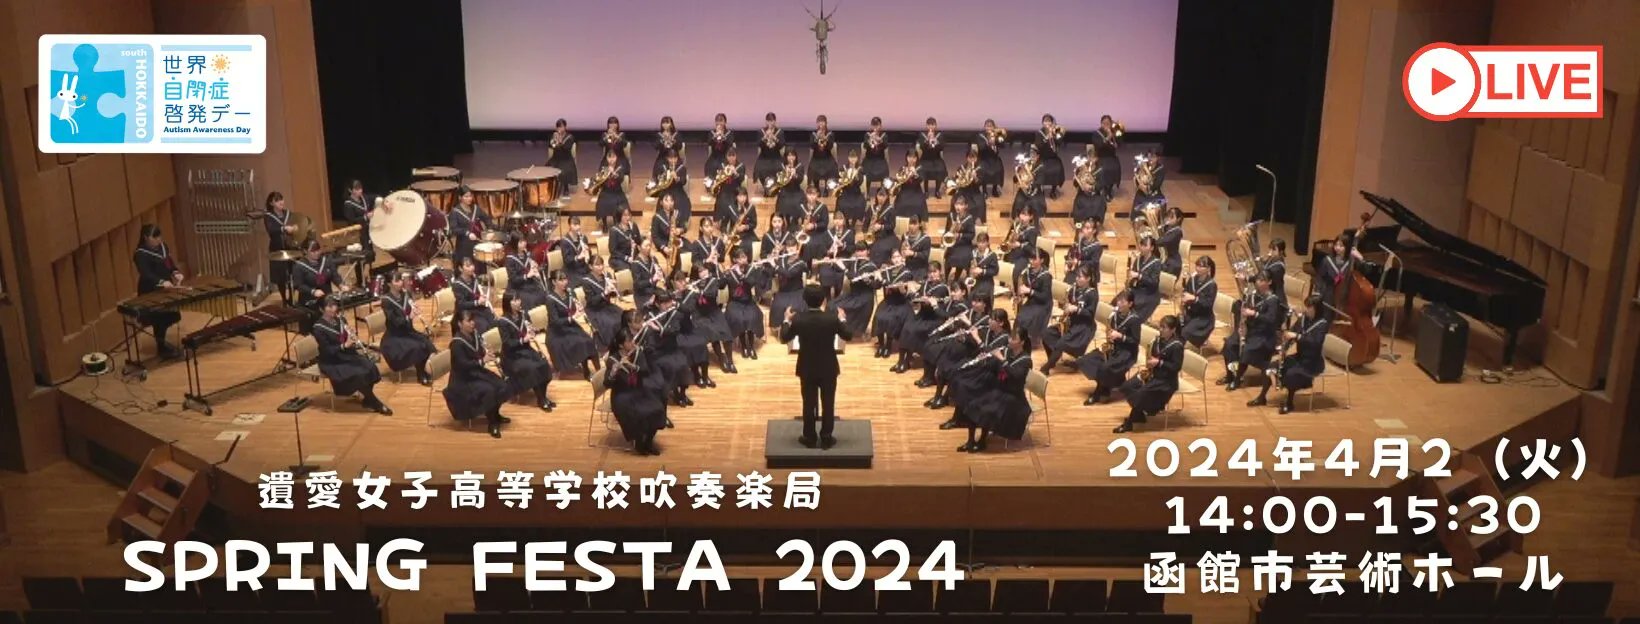 遺愛女子高等学校吹奏楽局 Spring Festa 2024が4月2日（火）に函館市芸術ホールにて開催されます。